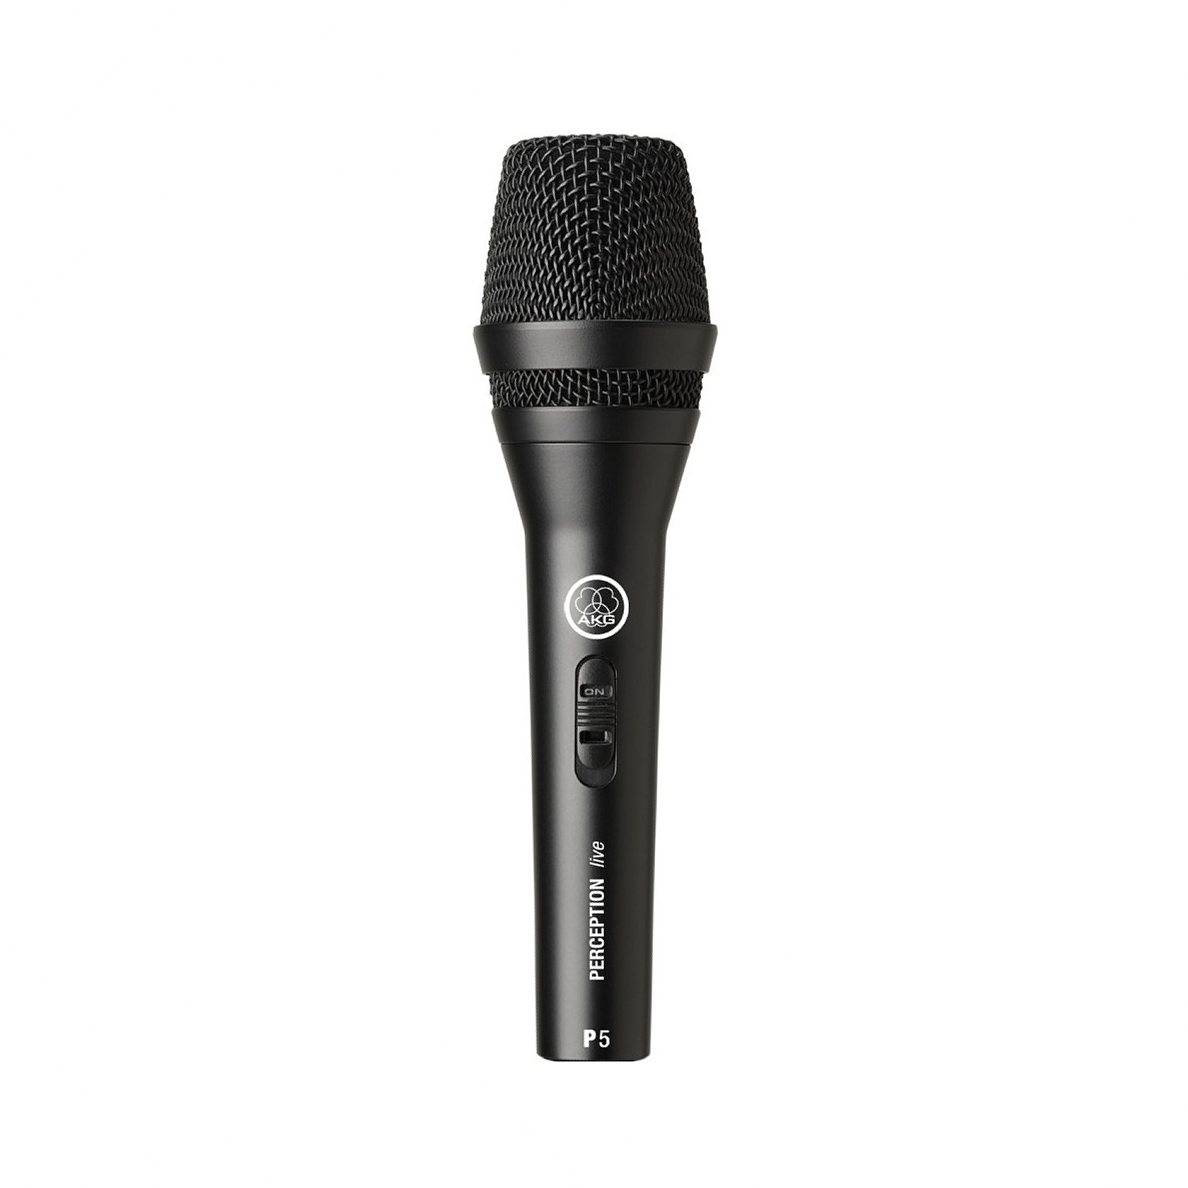 AKG P5S микрофон динамический суперкардиоидный вокальный 40-20000Гц, 2,5мВ/ Па с выключателем купить в prostore.me